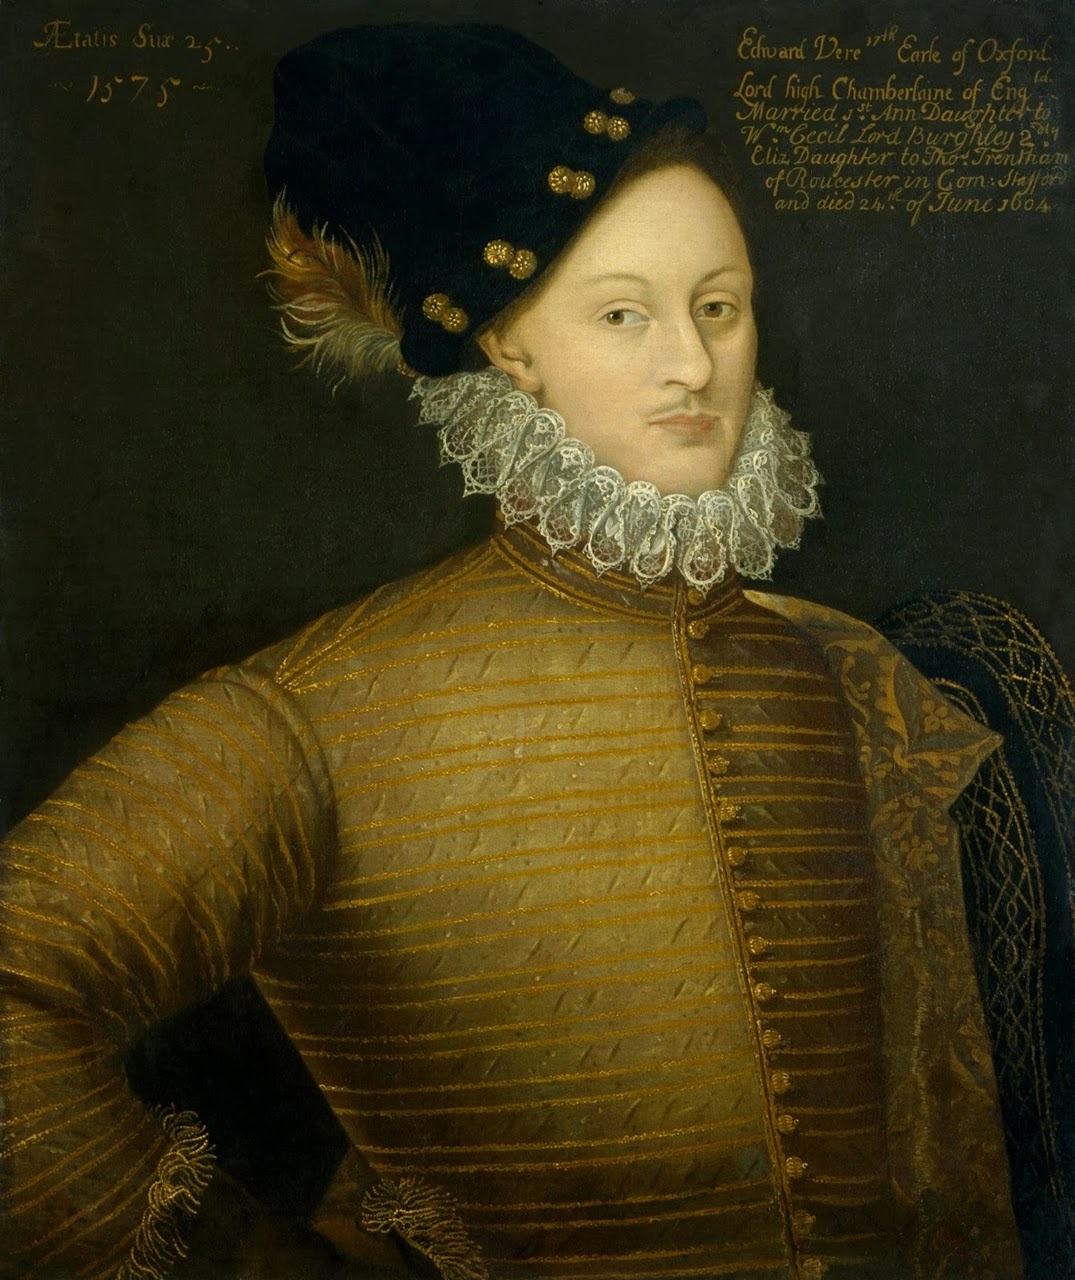 Edward de Vere, 1575 - A lui attribuite le opere pubblicate sotto il nome di William Shakespeare